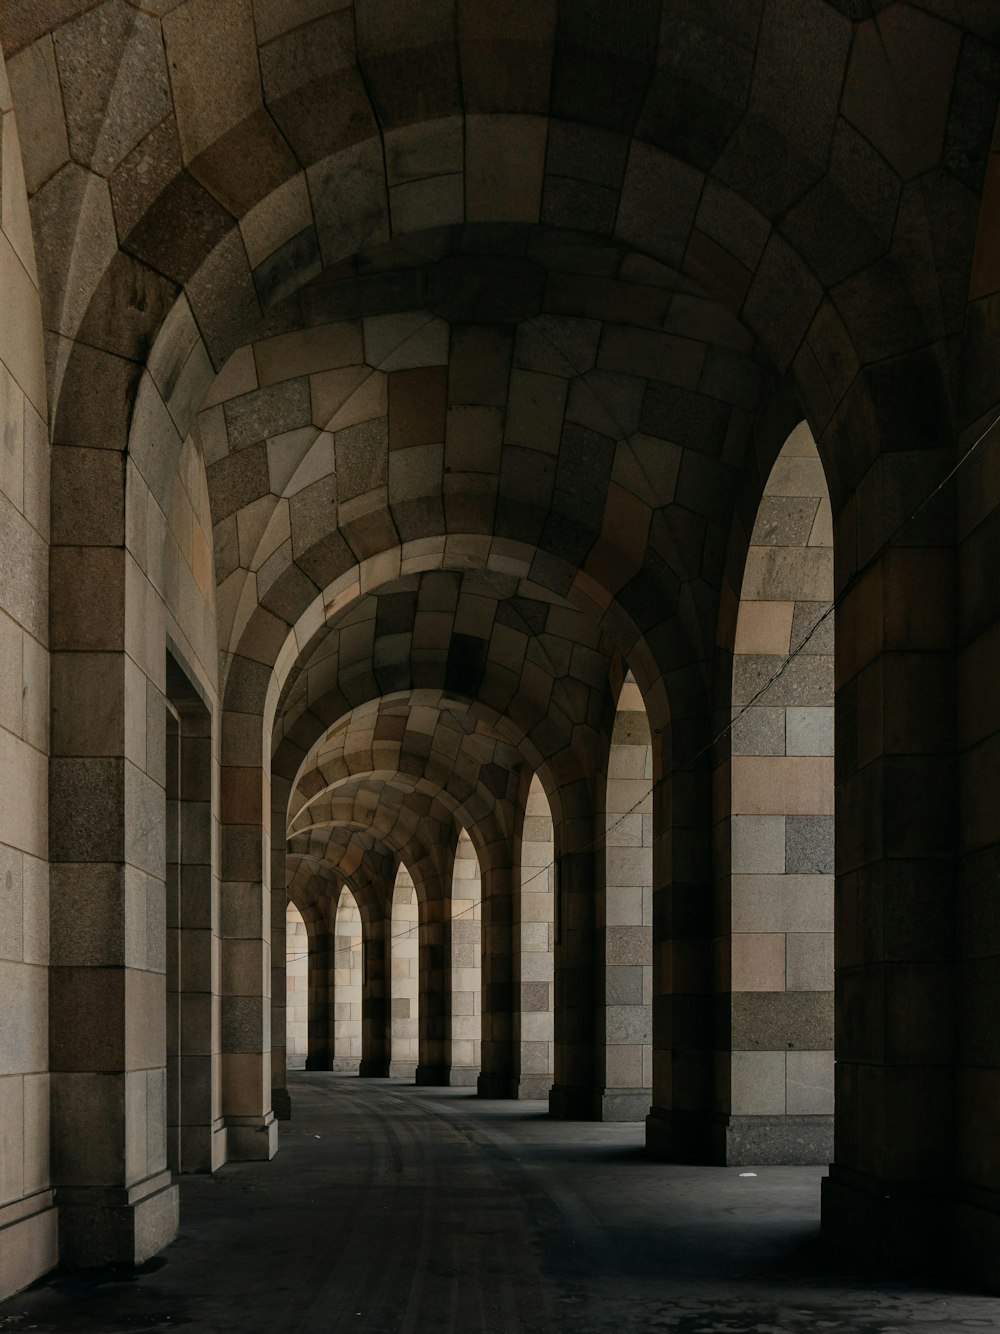 アーチ型の天井のある石造りの廊下